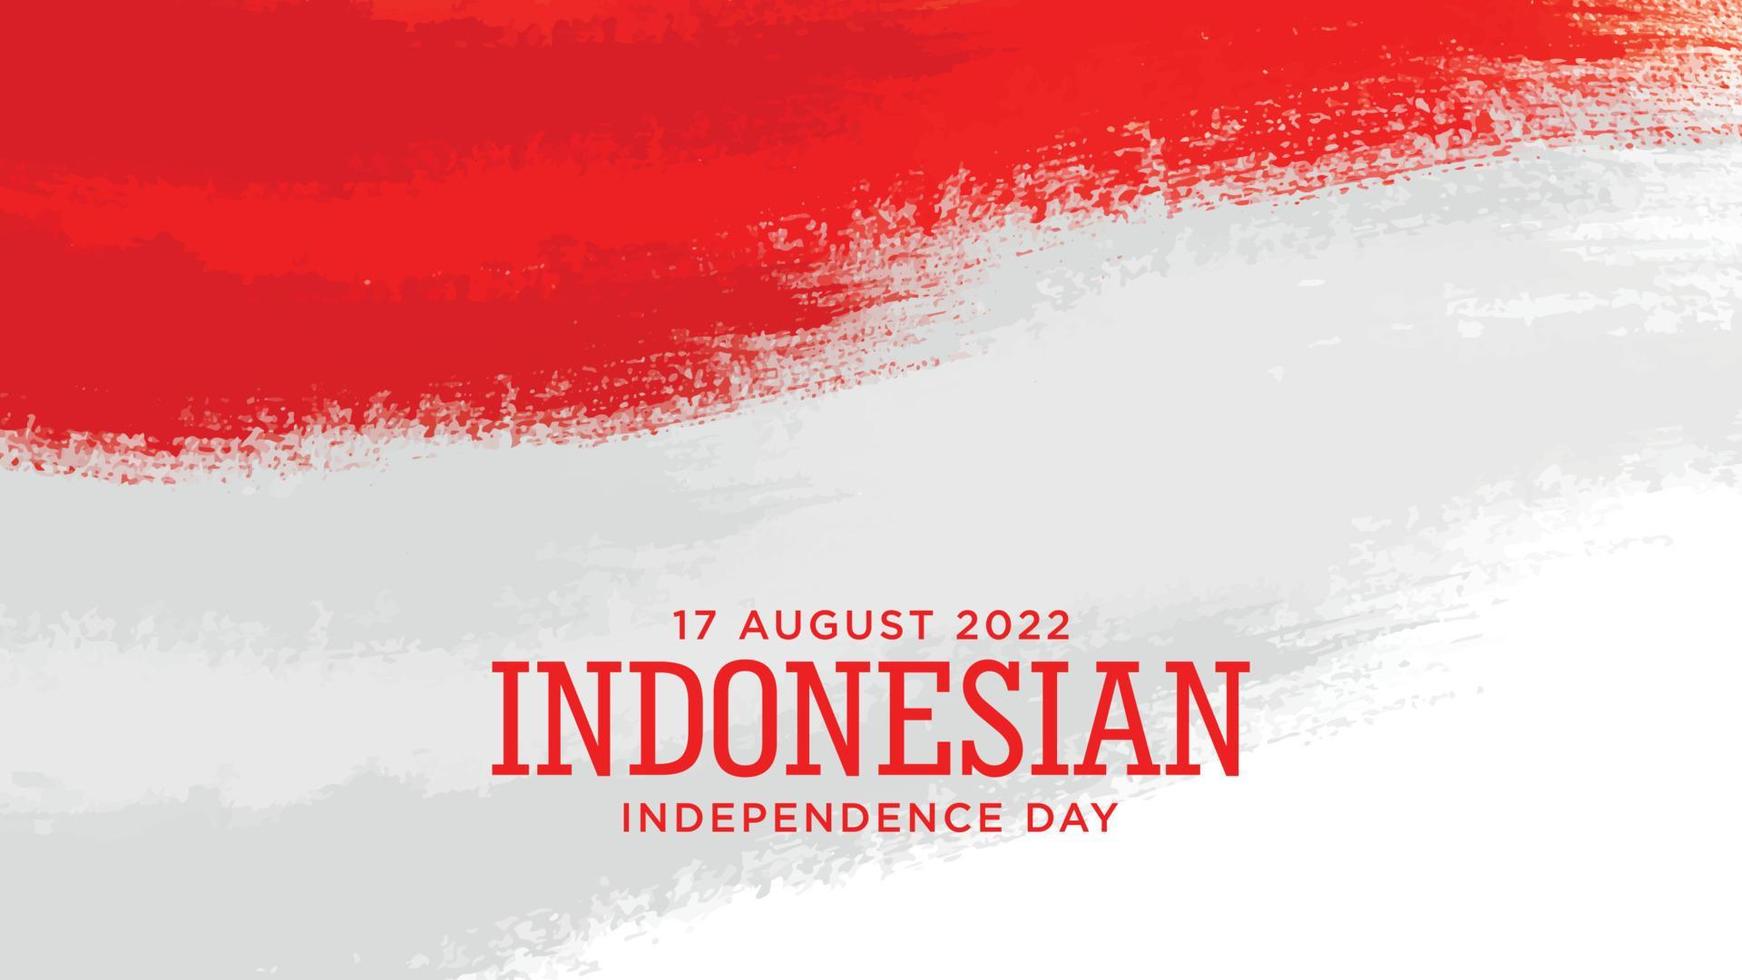 de onafhankelijkheidsdag van Indonesië met rood grungeontwerp als achtergrond. Indonesische tekst gemiddelde is een lange levensduur indonesië. goede sjabloon voor het ontwerp van de onafhankelijkheidsdag van Indonesië. vector